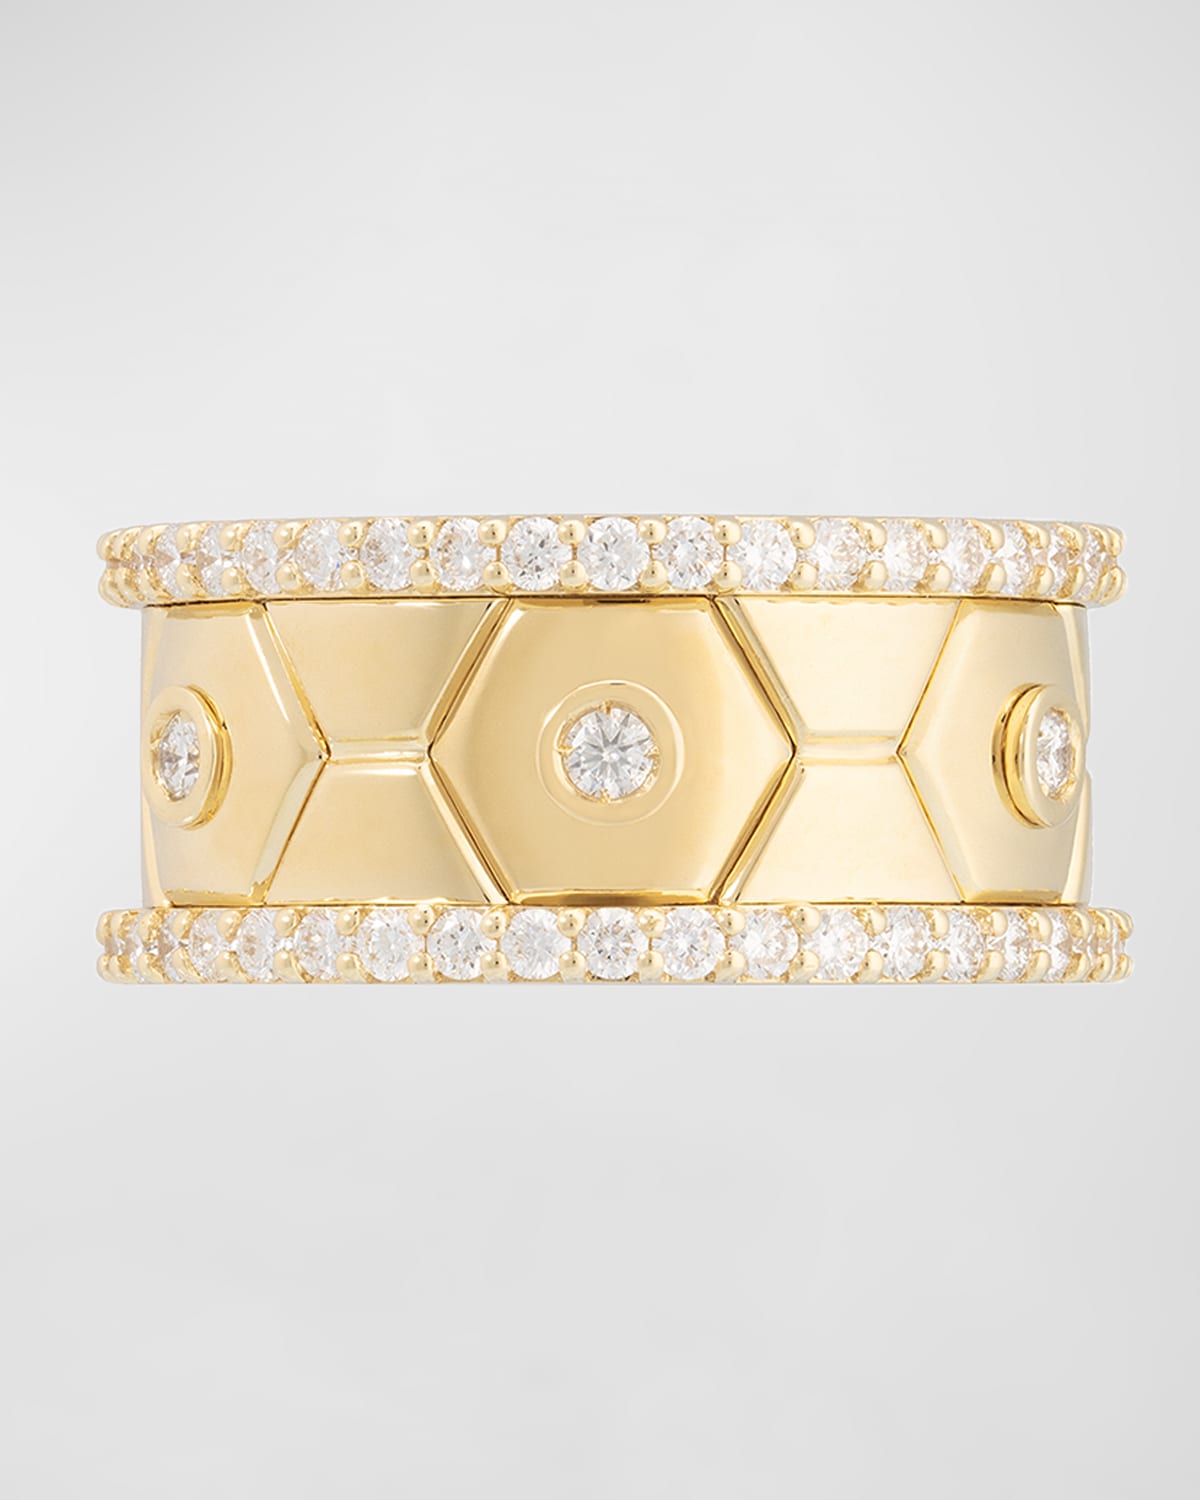 Baia Sommersa 18K Yellow Gold Eternity Ring with White Diamonds